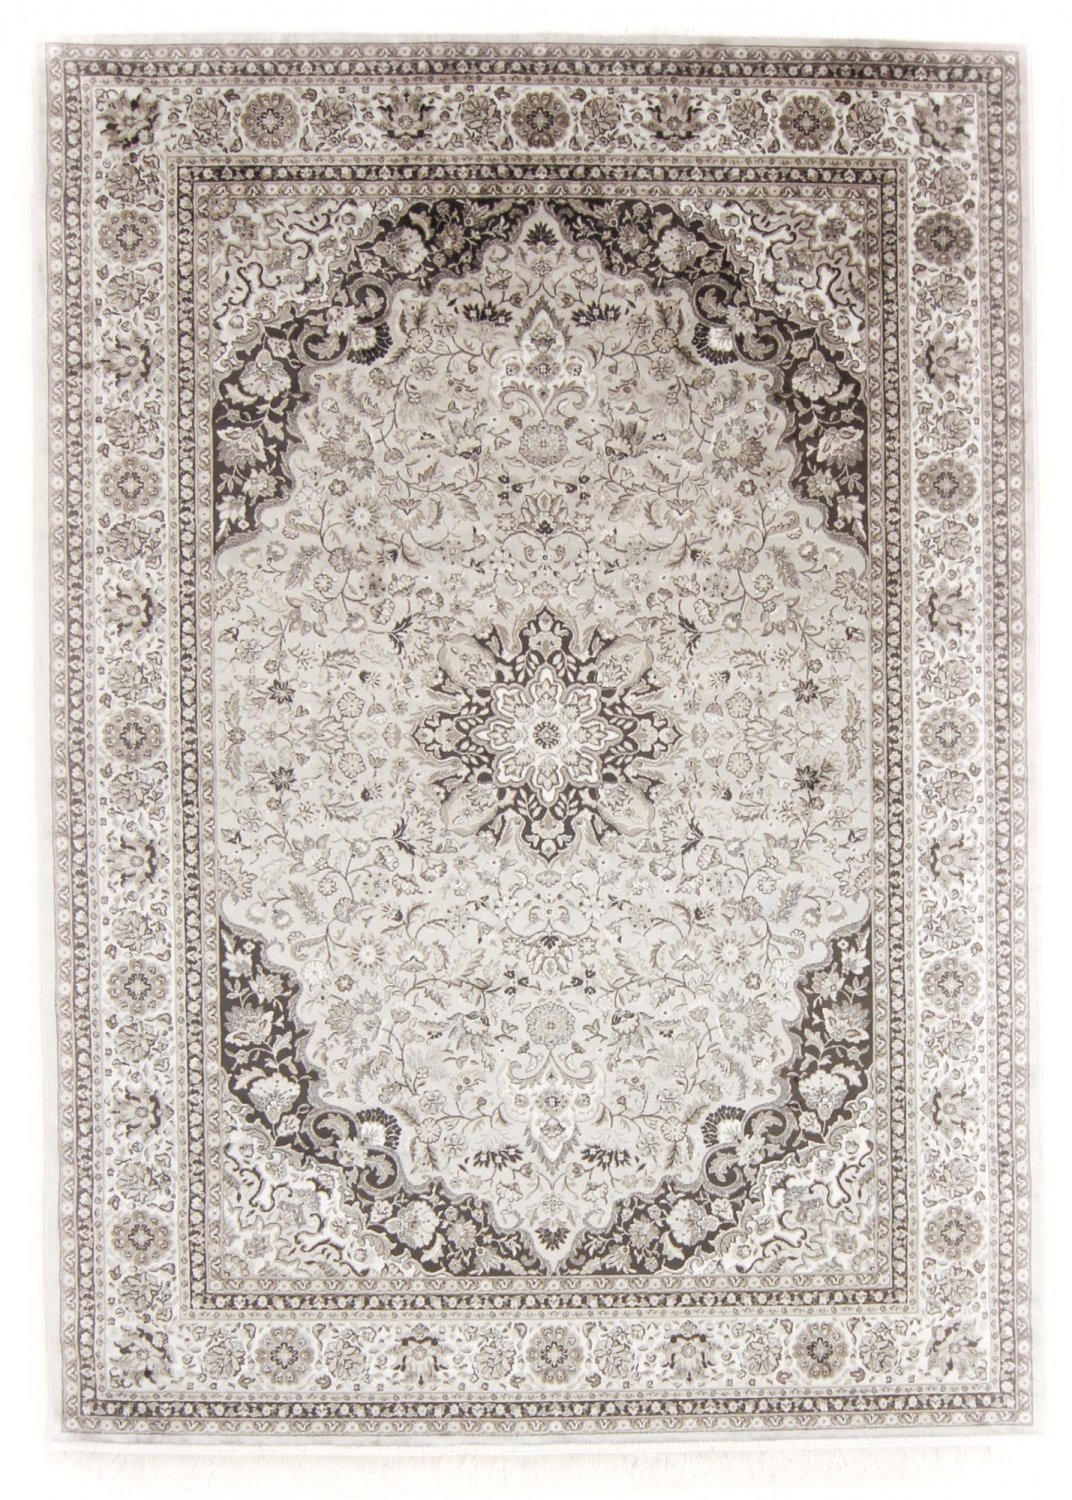 Wilton rug - Romia (silver)